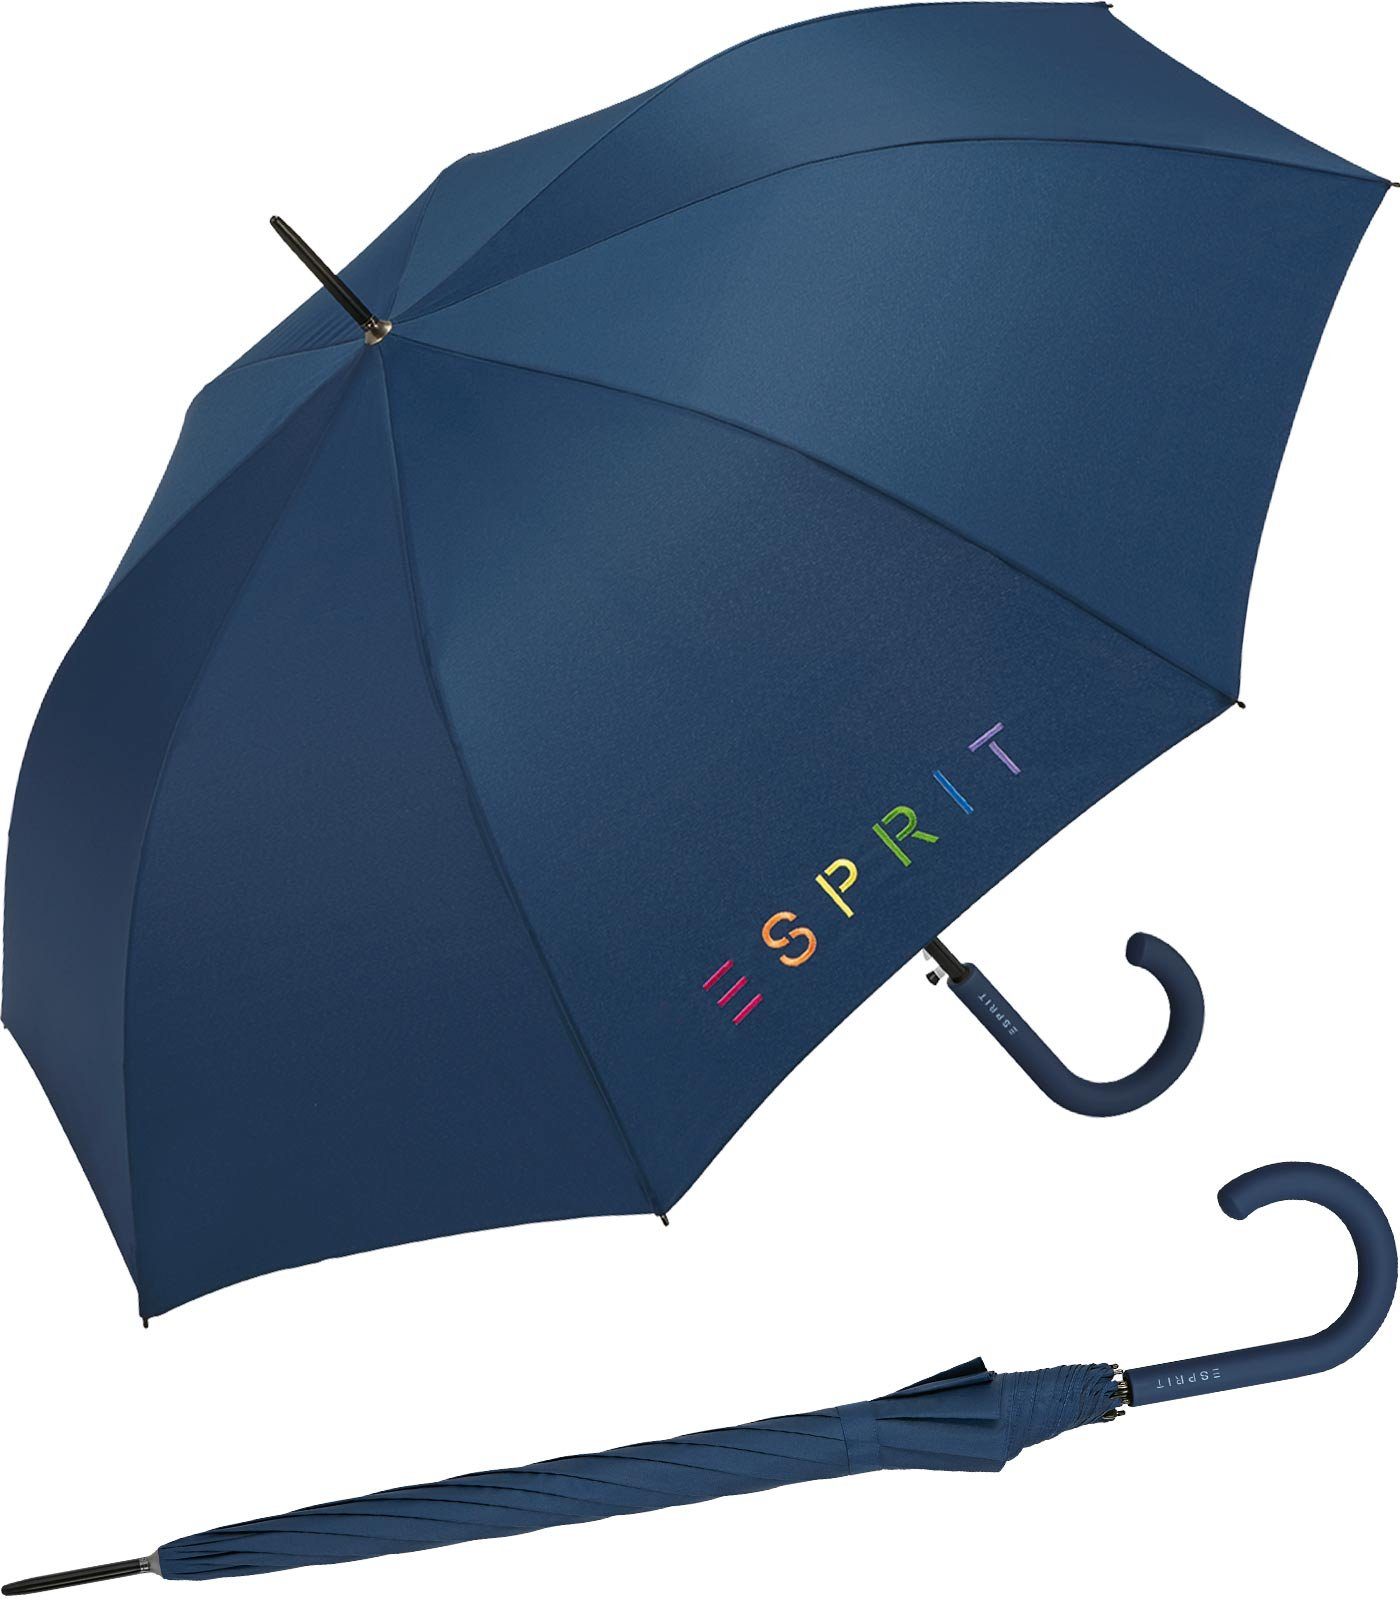 Esprit Langregenschirm Damen-Regenschirm Colorful Logo, bunt bedruckt mit Esprit-Schriftzug blau